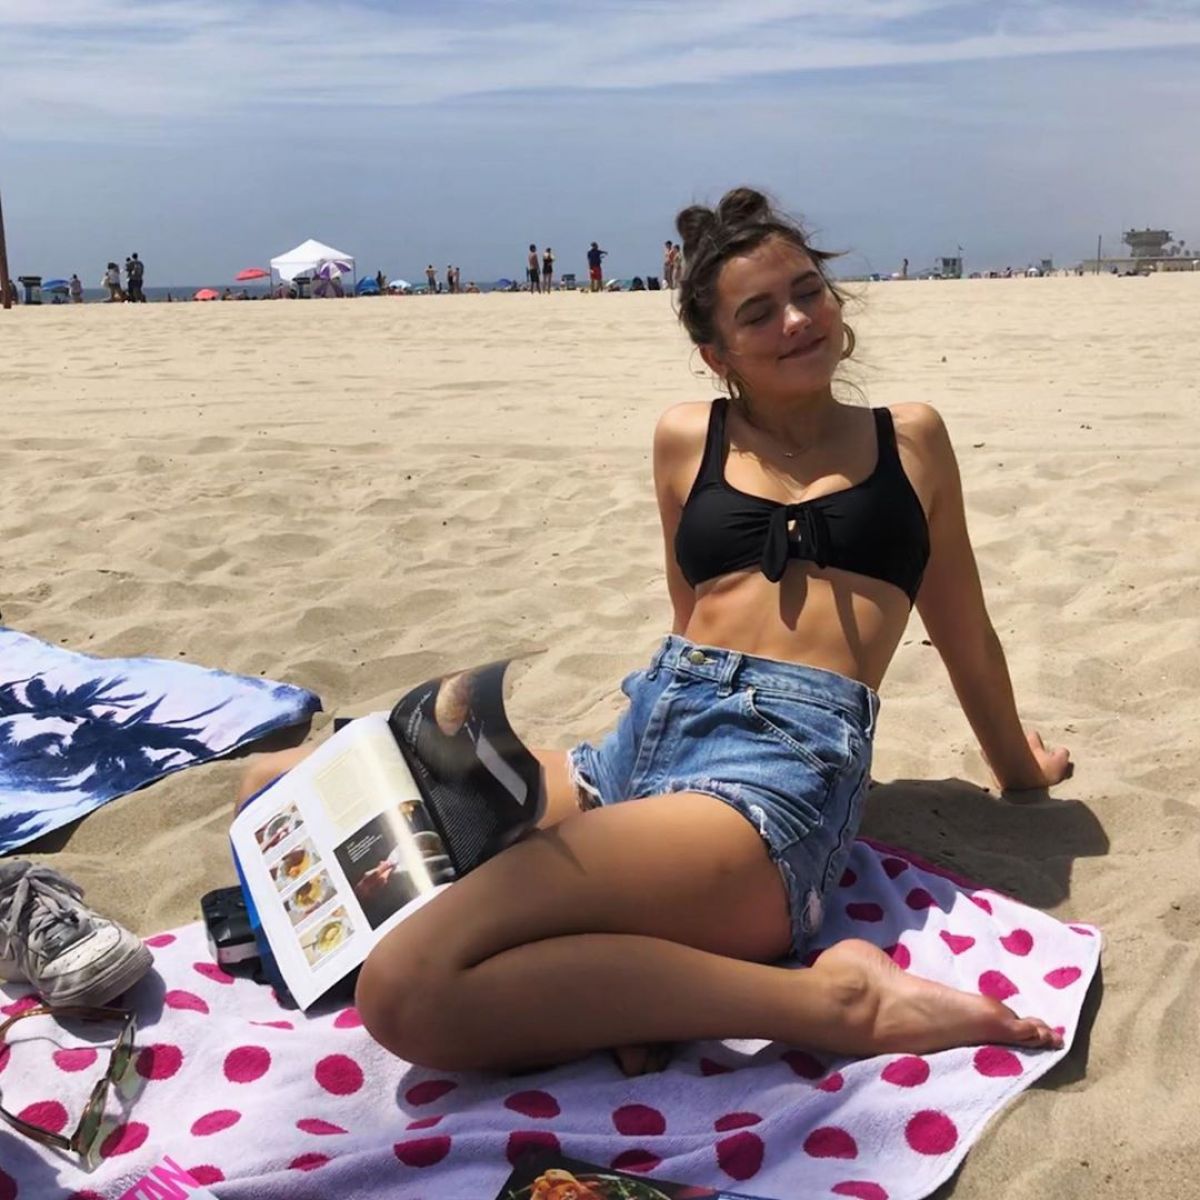 CHLOE EAST in Bikini Top - Instagram Photo 08/04/2019. 